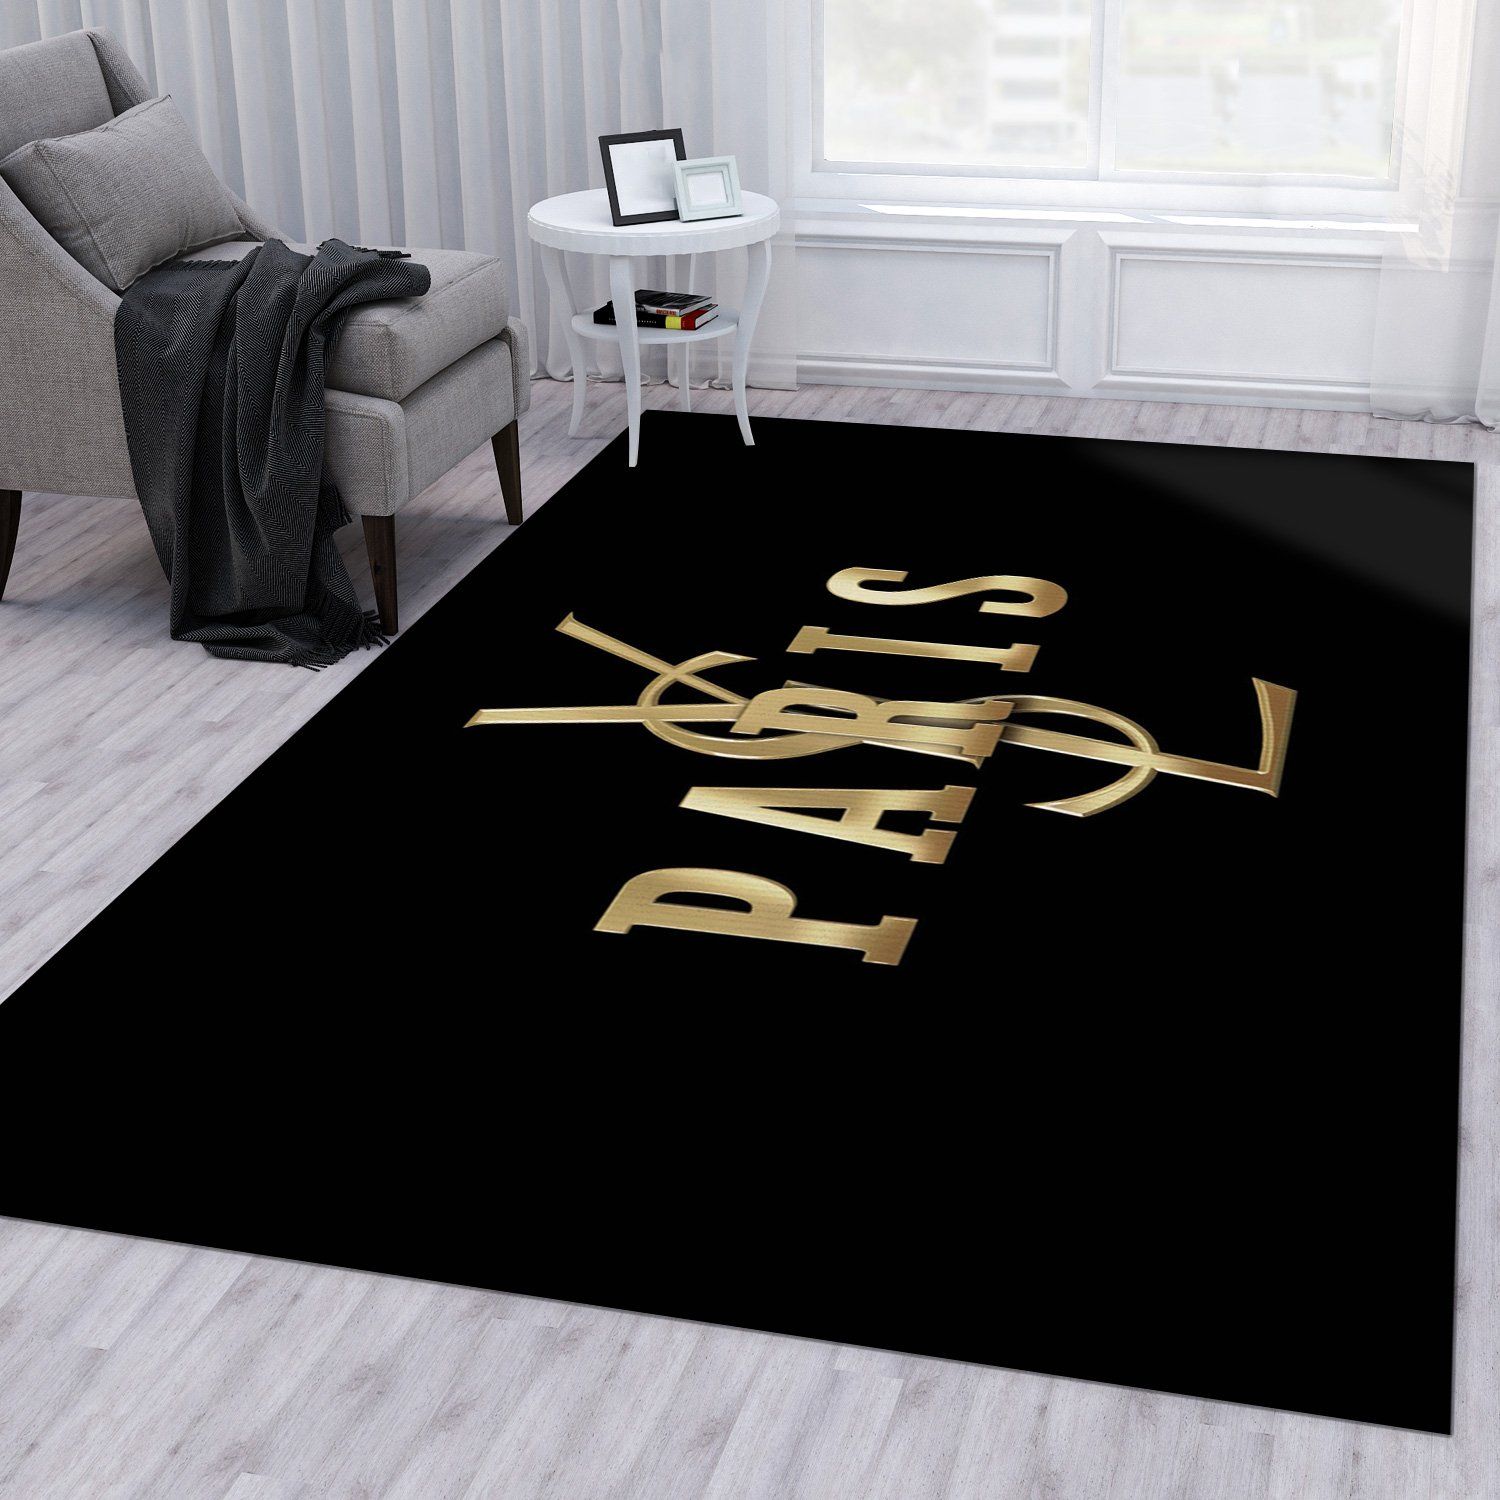 Yves Saint Laurent V7 Fashion Brand Living Room Rug Family Gift US